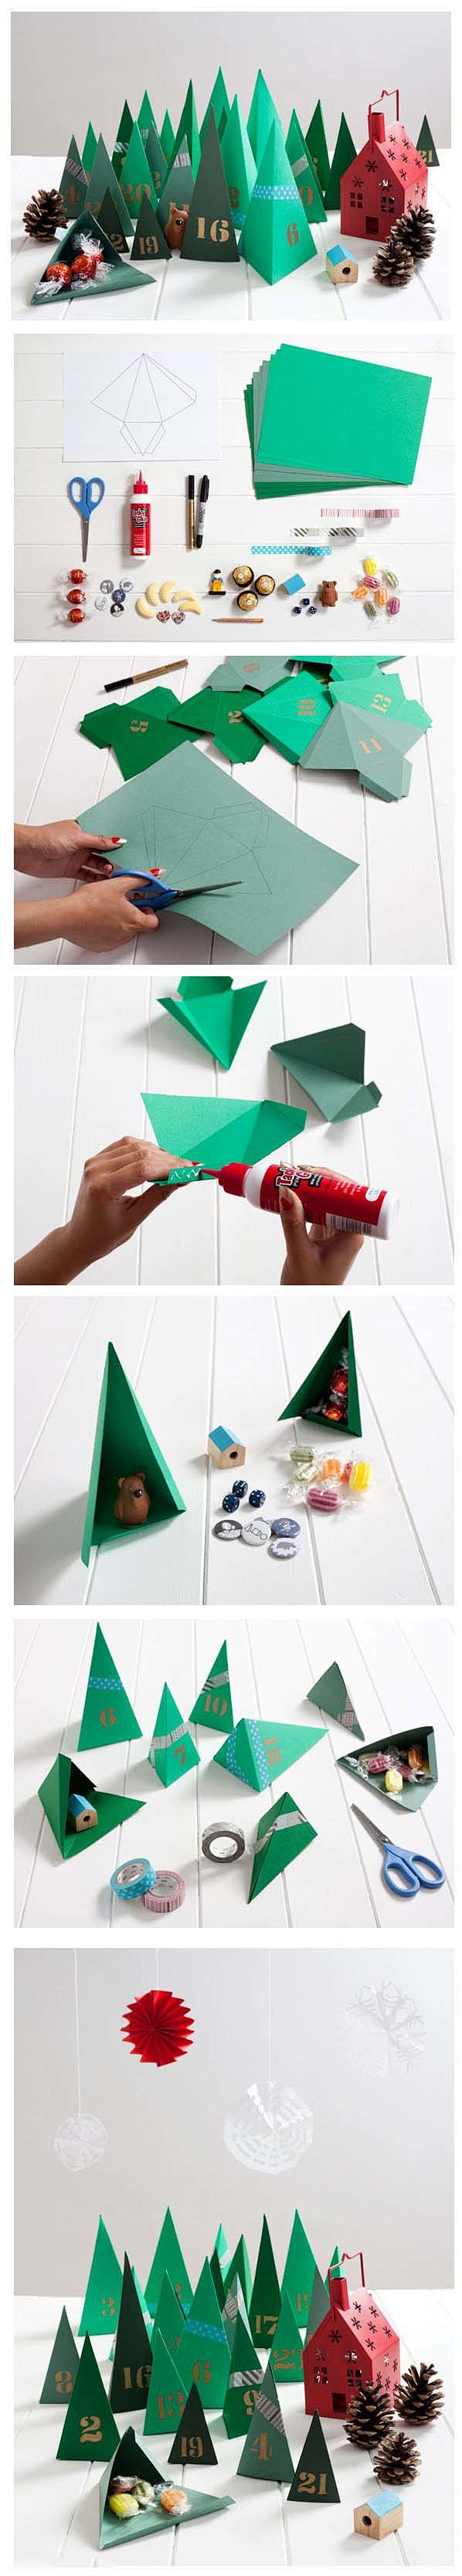 手工卡纸制作儿童圣诞元素礼包折纸-www...